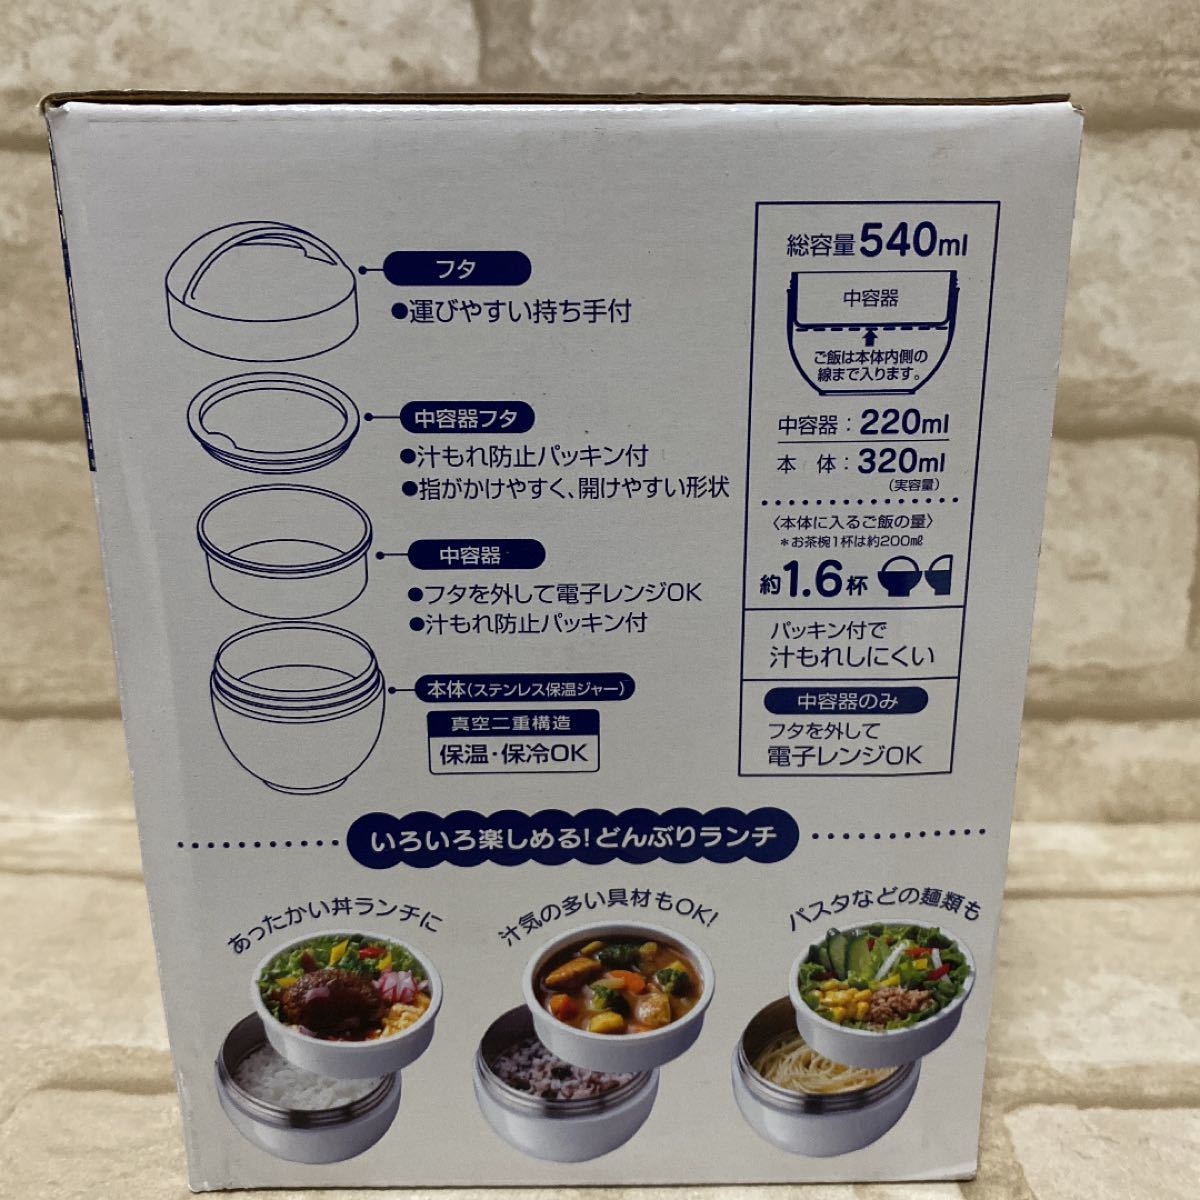 新品 超軽量 カフェ丼 保温 保冷 ステンレス ランチボックス540ml スヌーピー